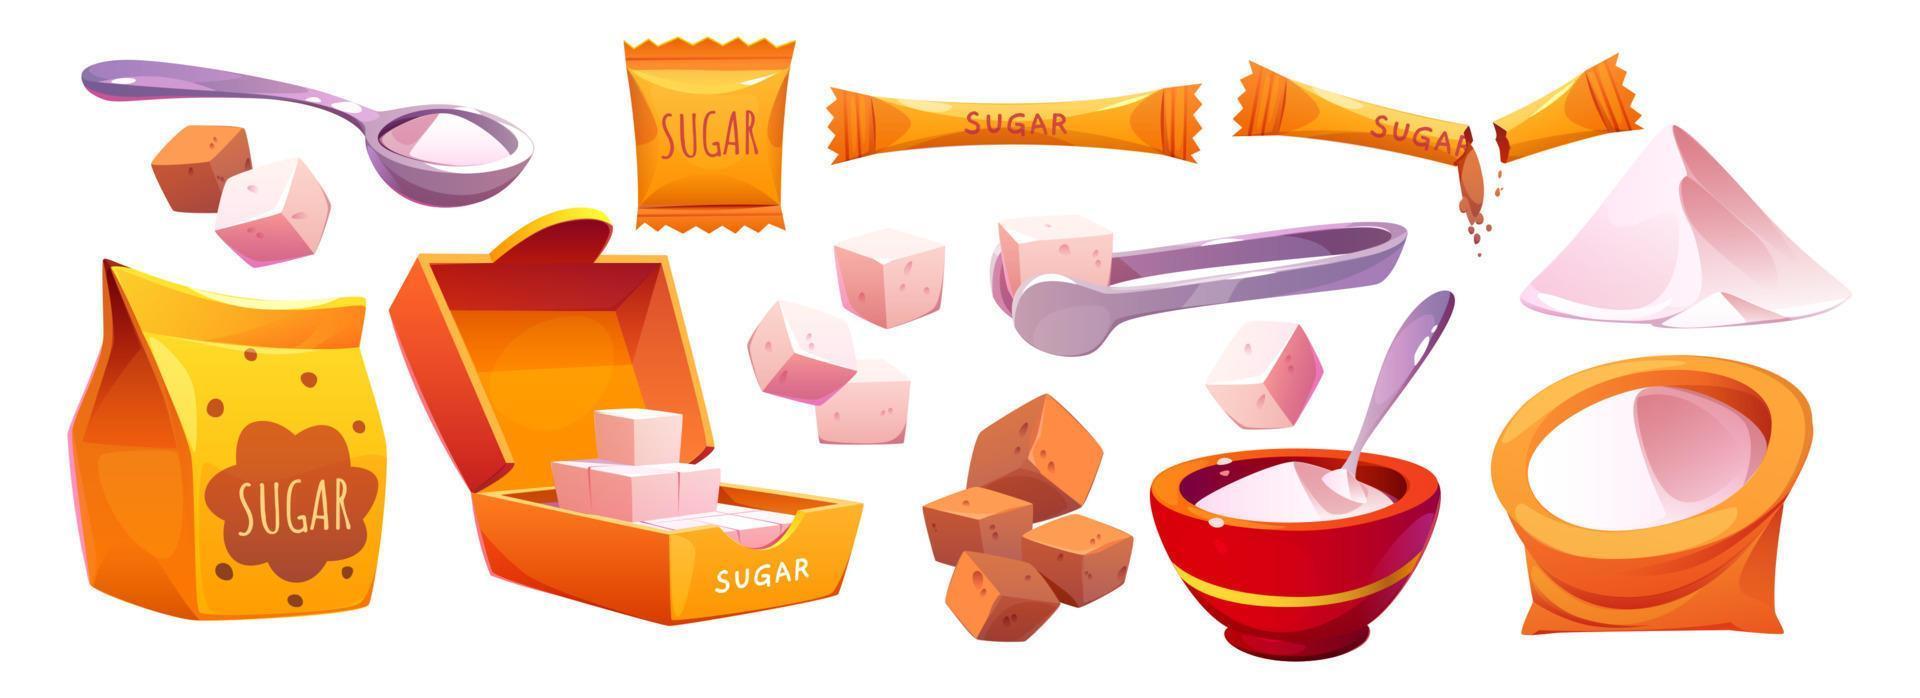 dibujos animados conjunto de azúcar en diferente paquetes vector